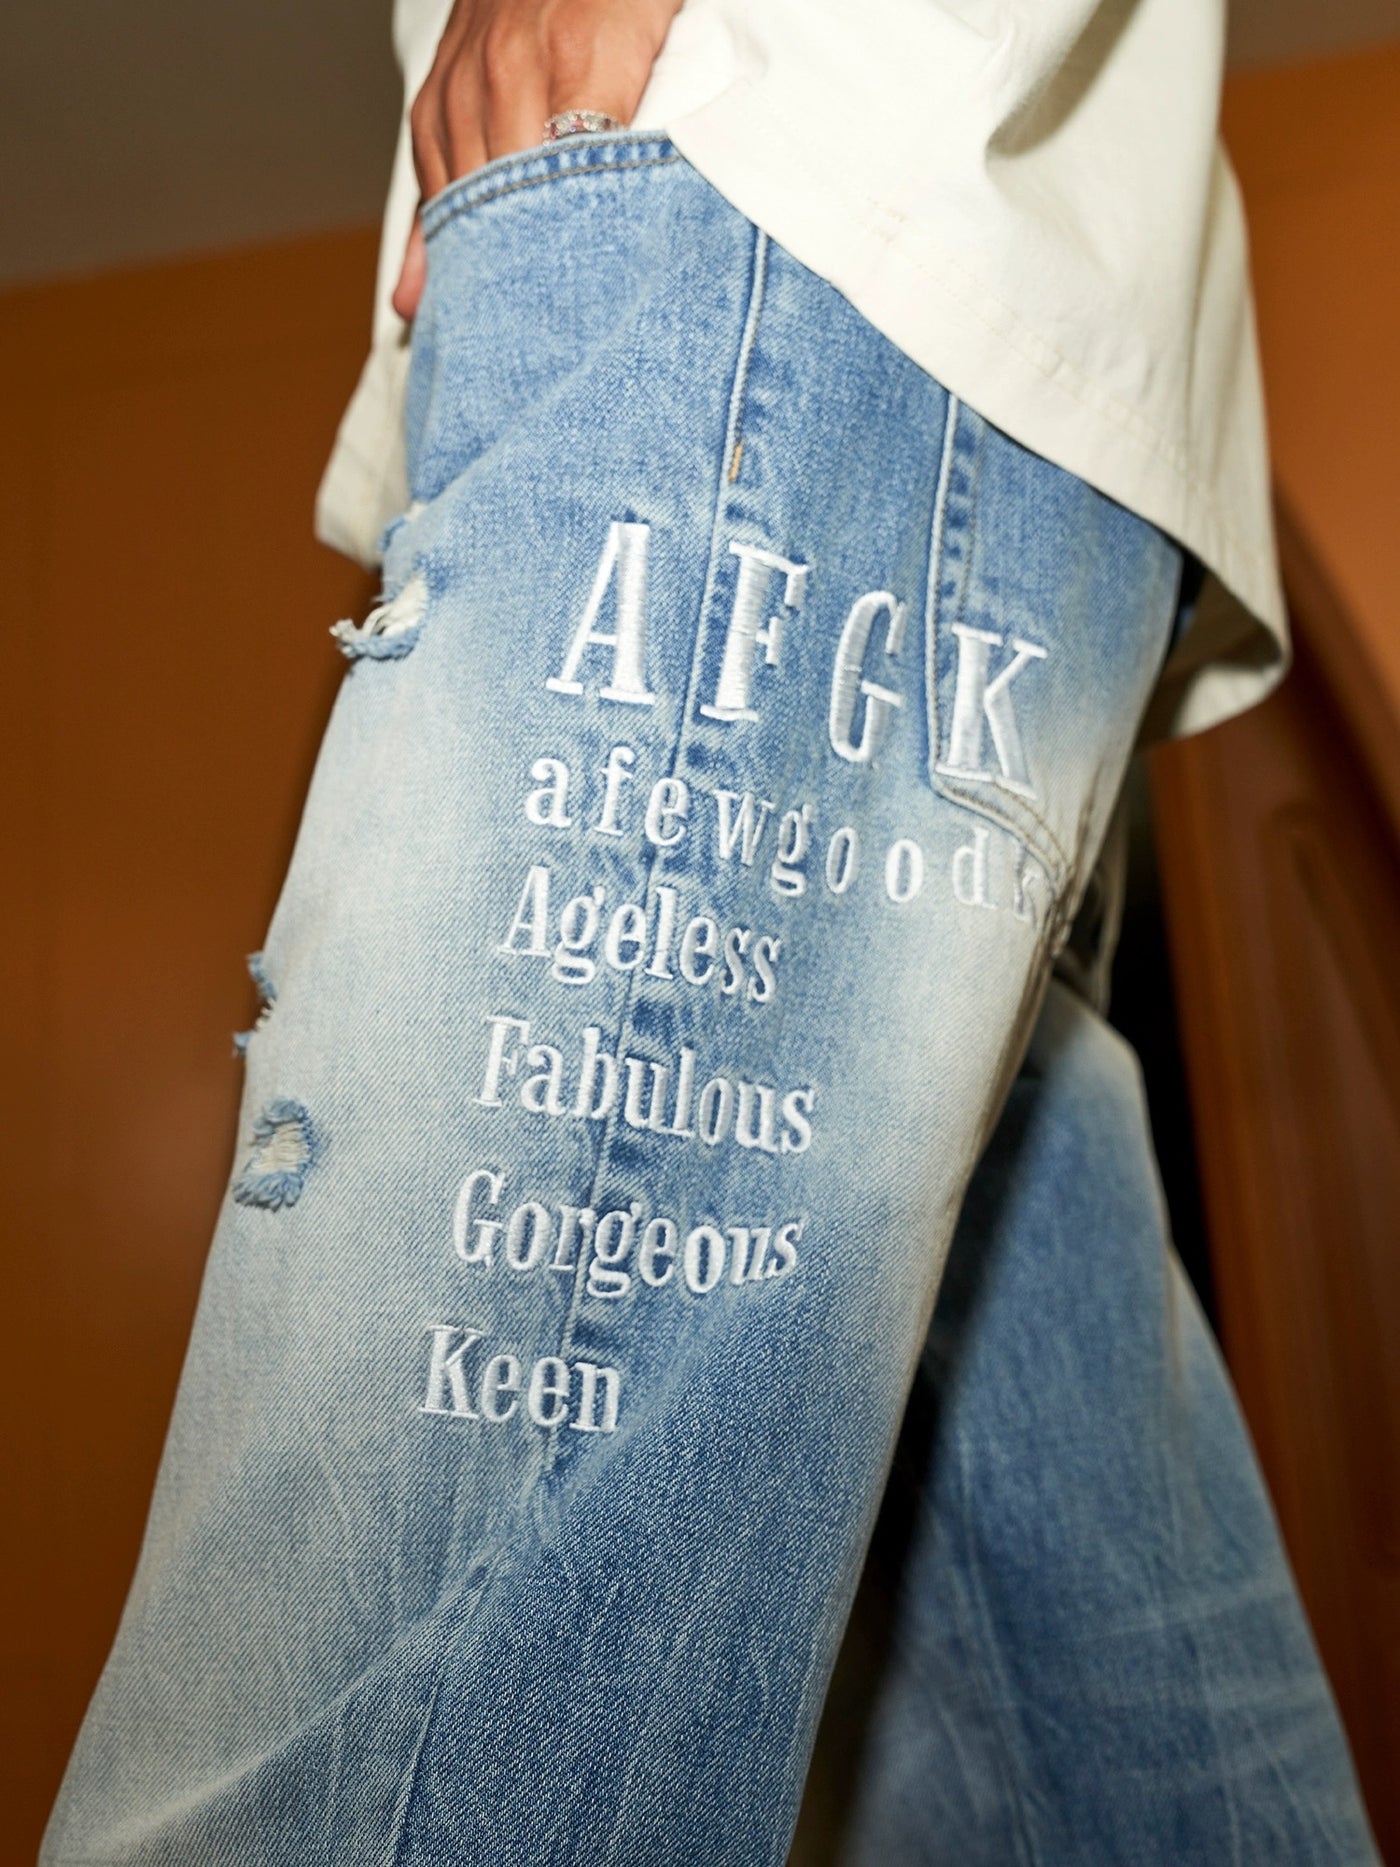 DONCARE(AFGK) "Disdressed denim jeans"